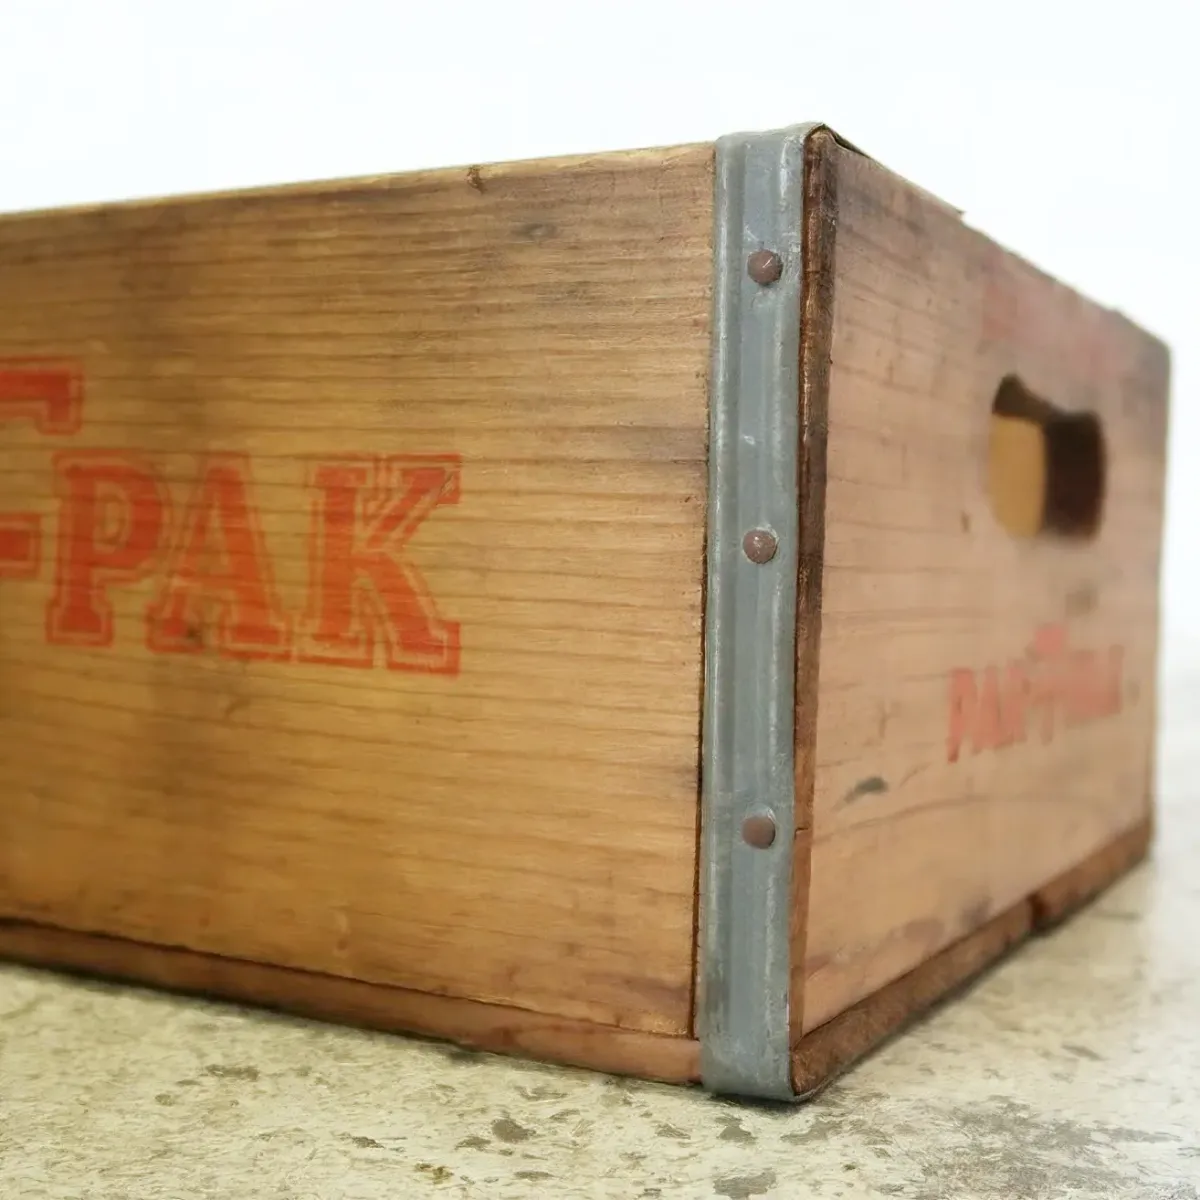 PAR-T-PAK ビンテージ ウッドボックス